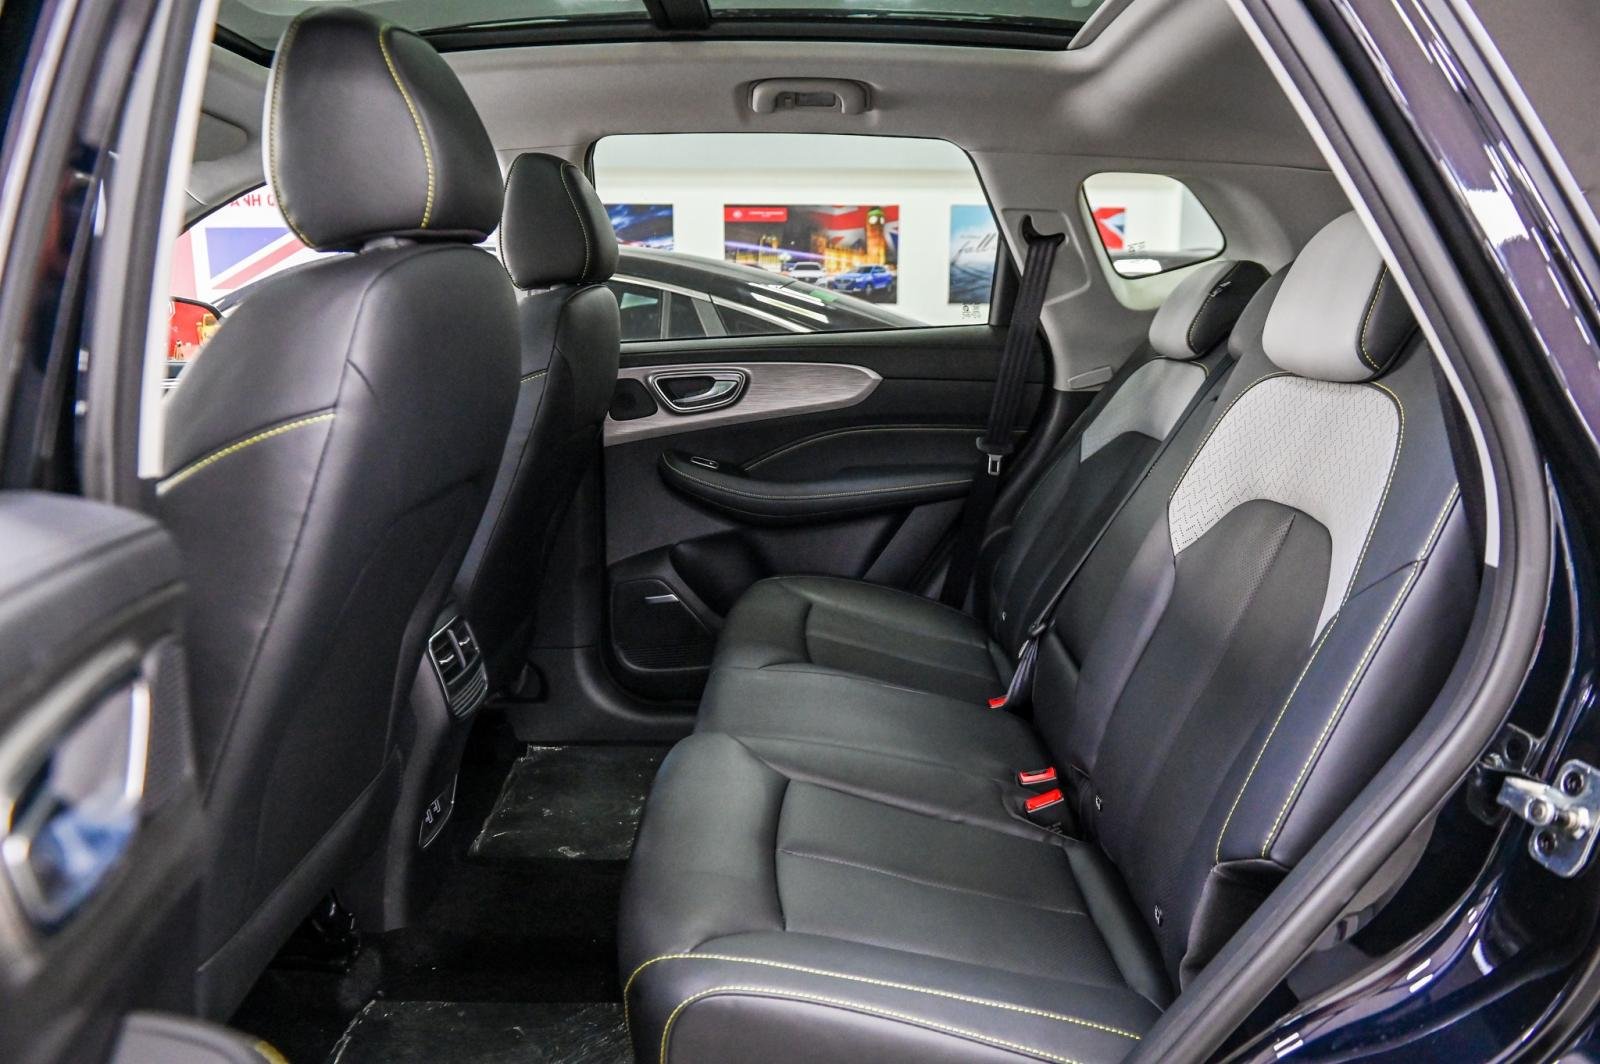 Hàng ghế thứ 2 trên xe MG RX5 có bệ tỳ tay, chức năng chỉnh độ ngả, cửa gió điều hòa riêng và 2 cổng sạc